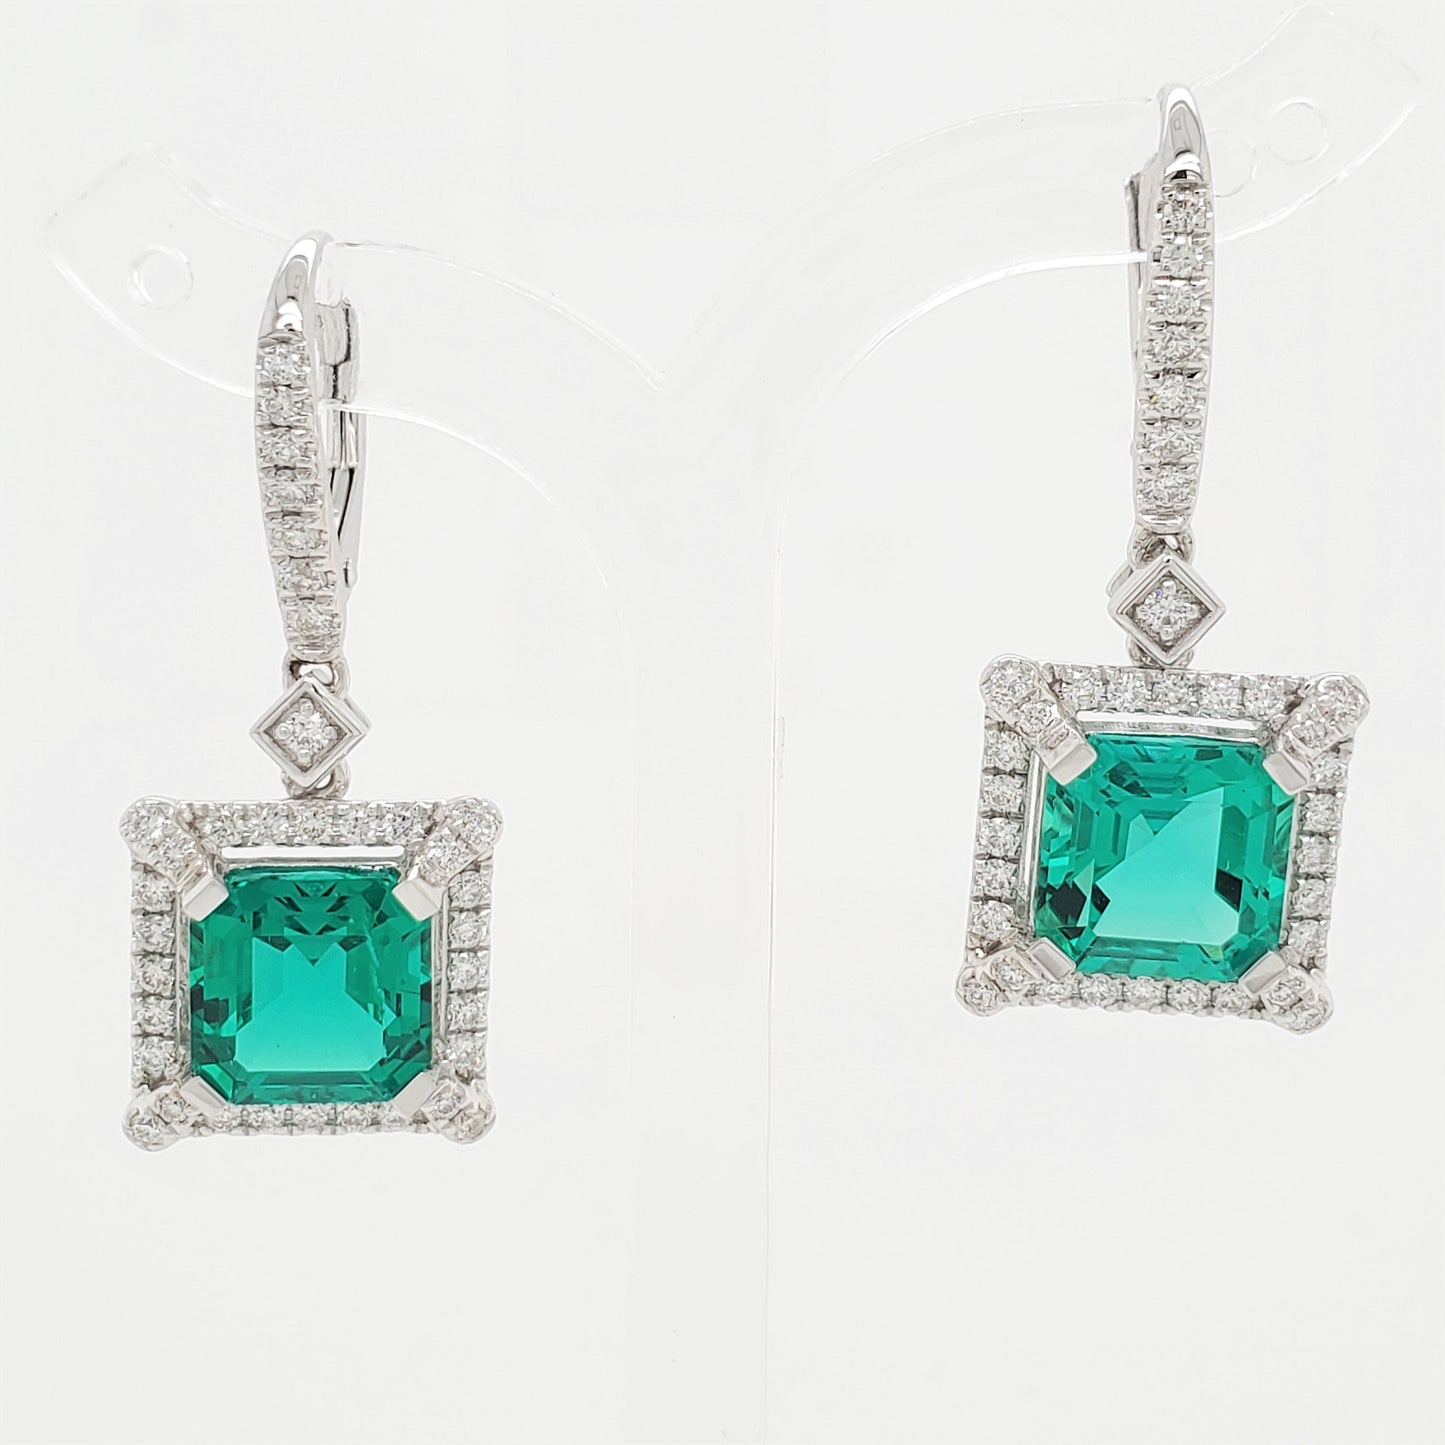 17634E-EM8X8 Earrings With Diamond & Gemstone